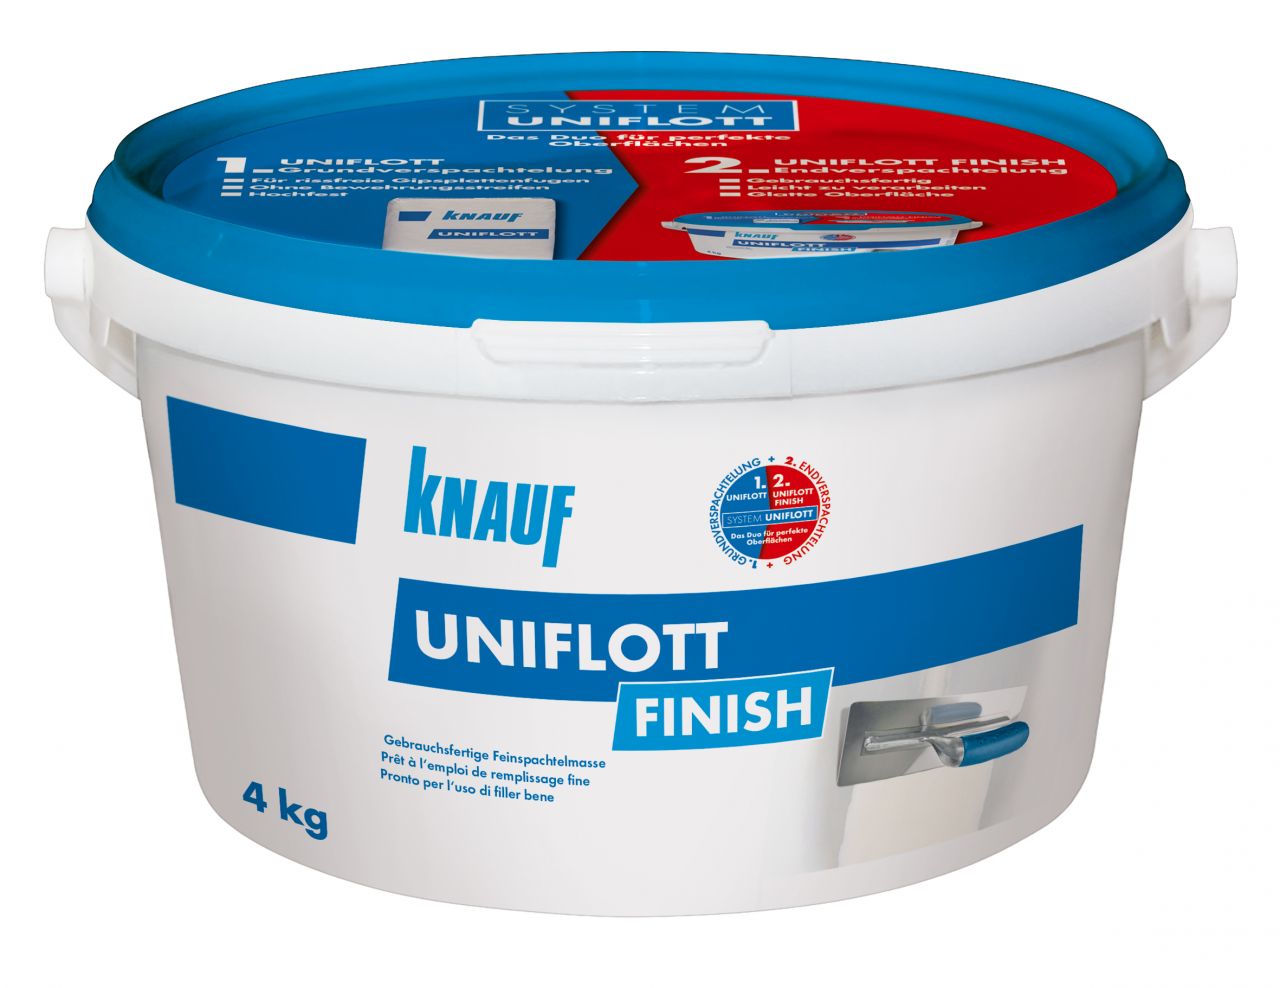 Knauf Uniflott Finish Spachtelmasse 4 kg von Knauf